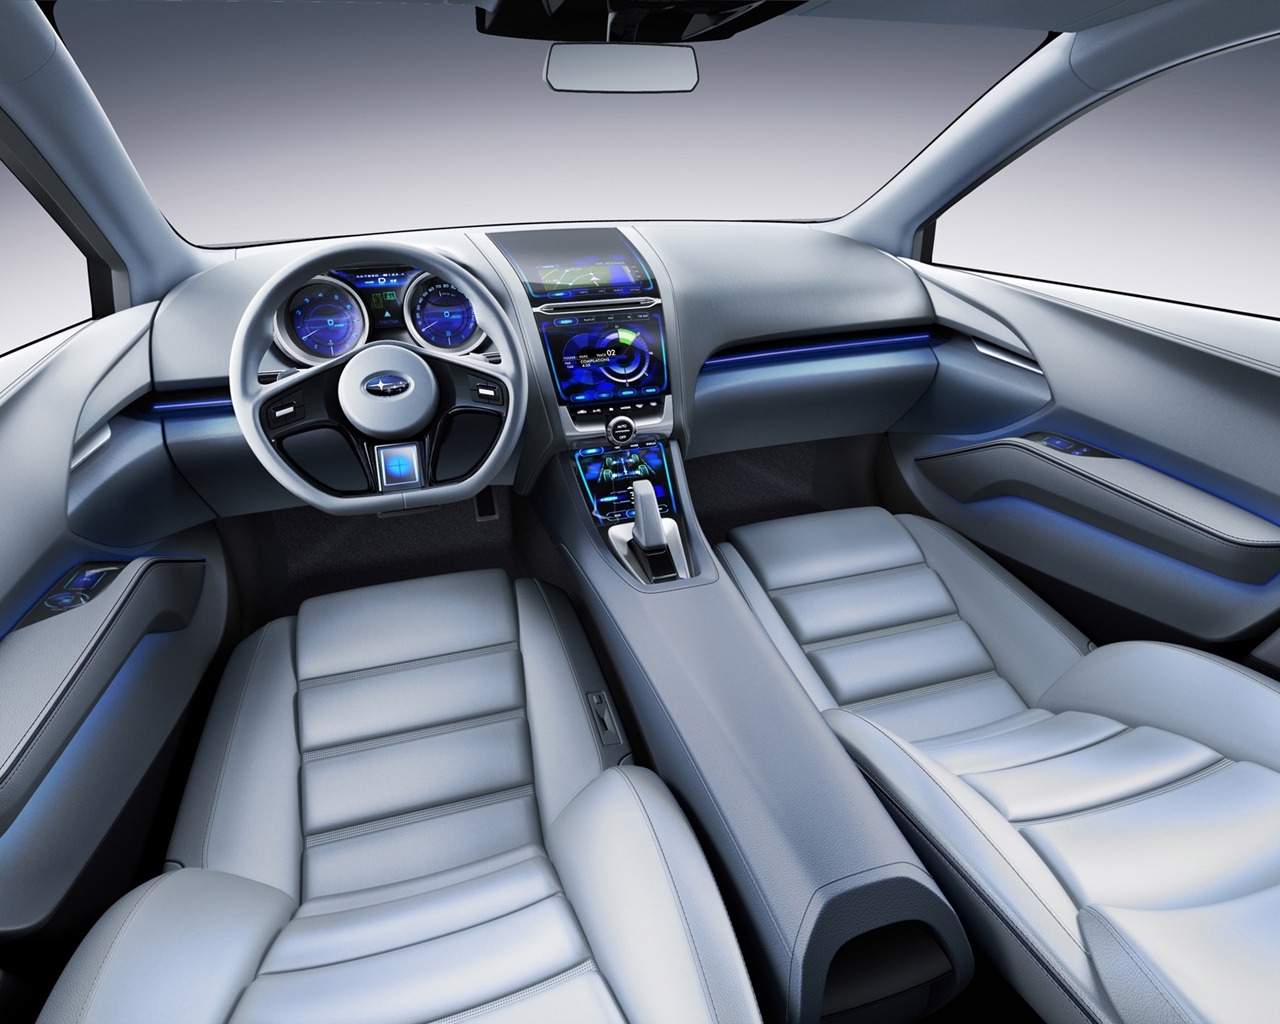 Subaru Impreza Concept Interior for 1280 x 1024 resolution